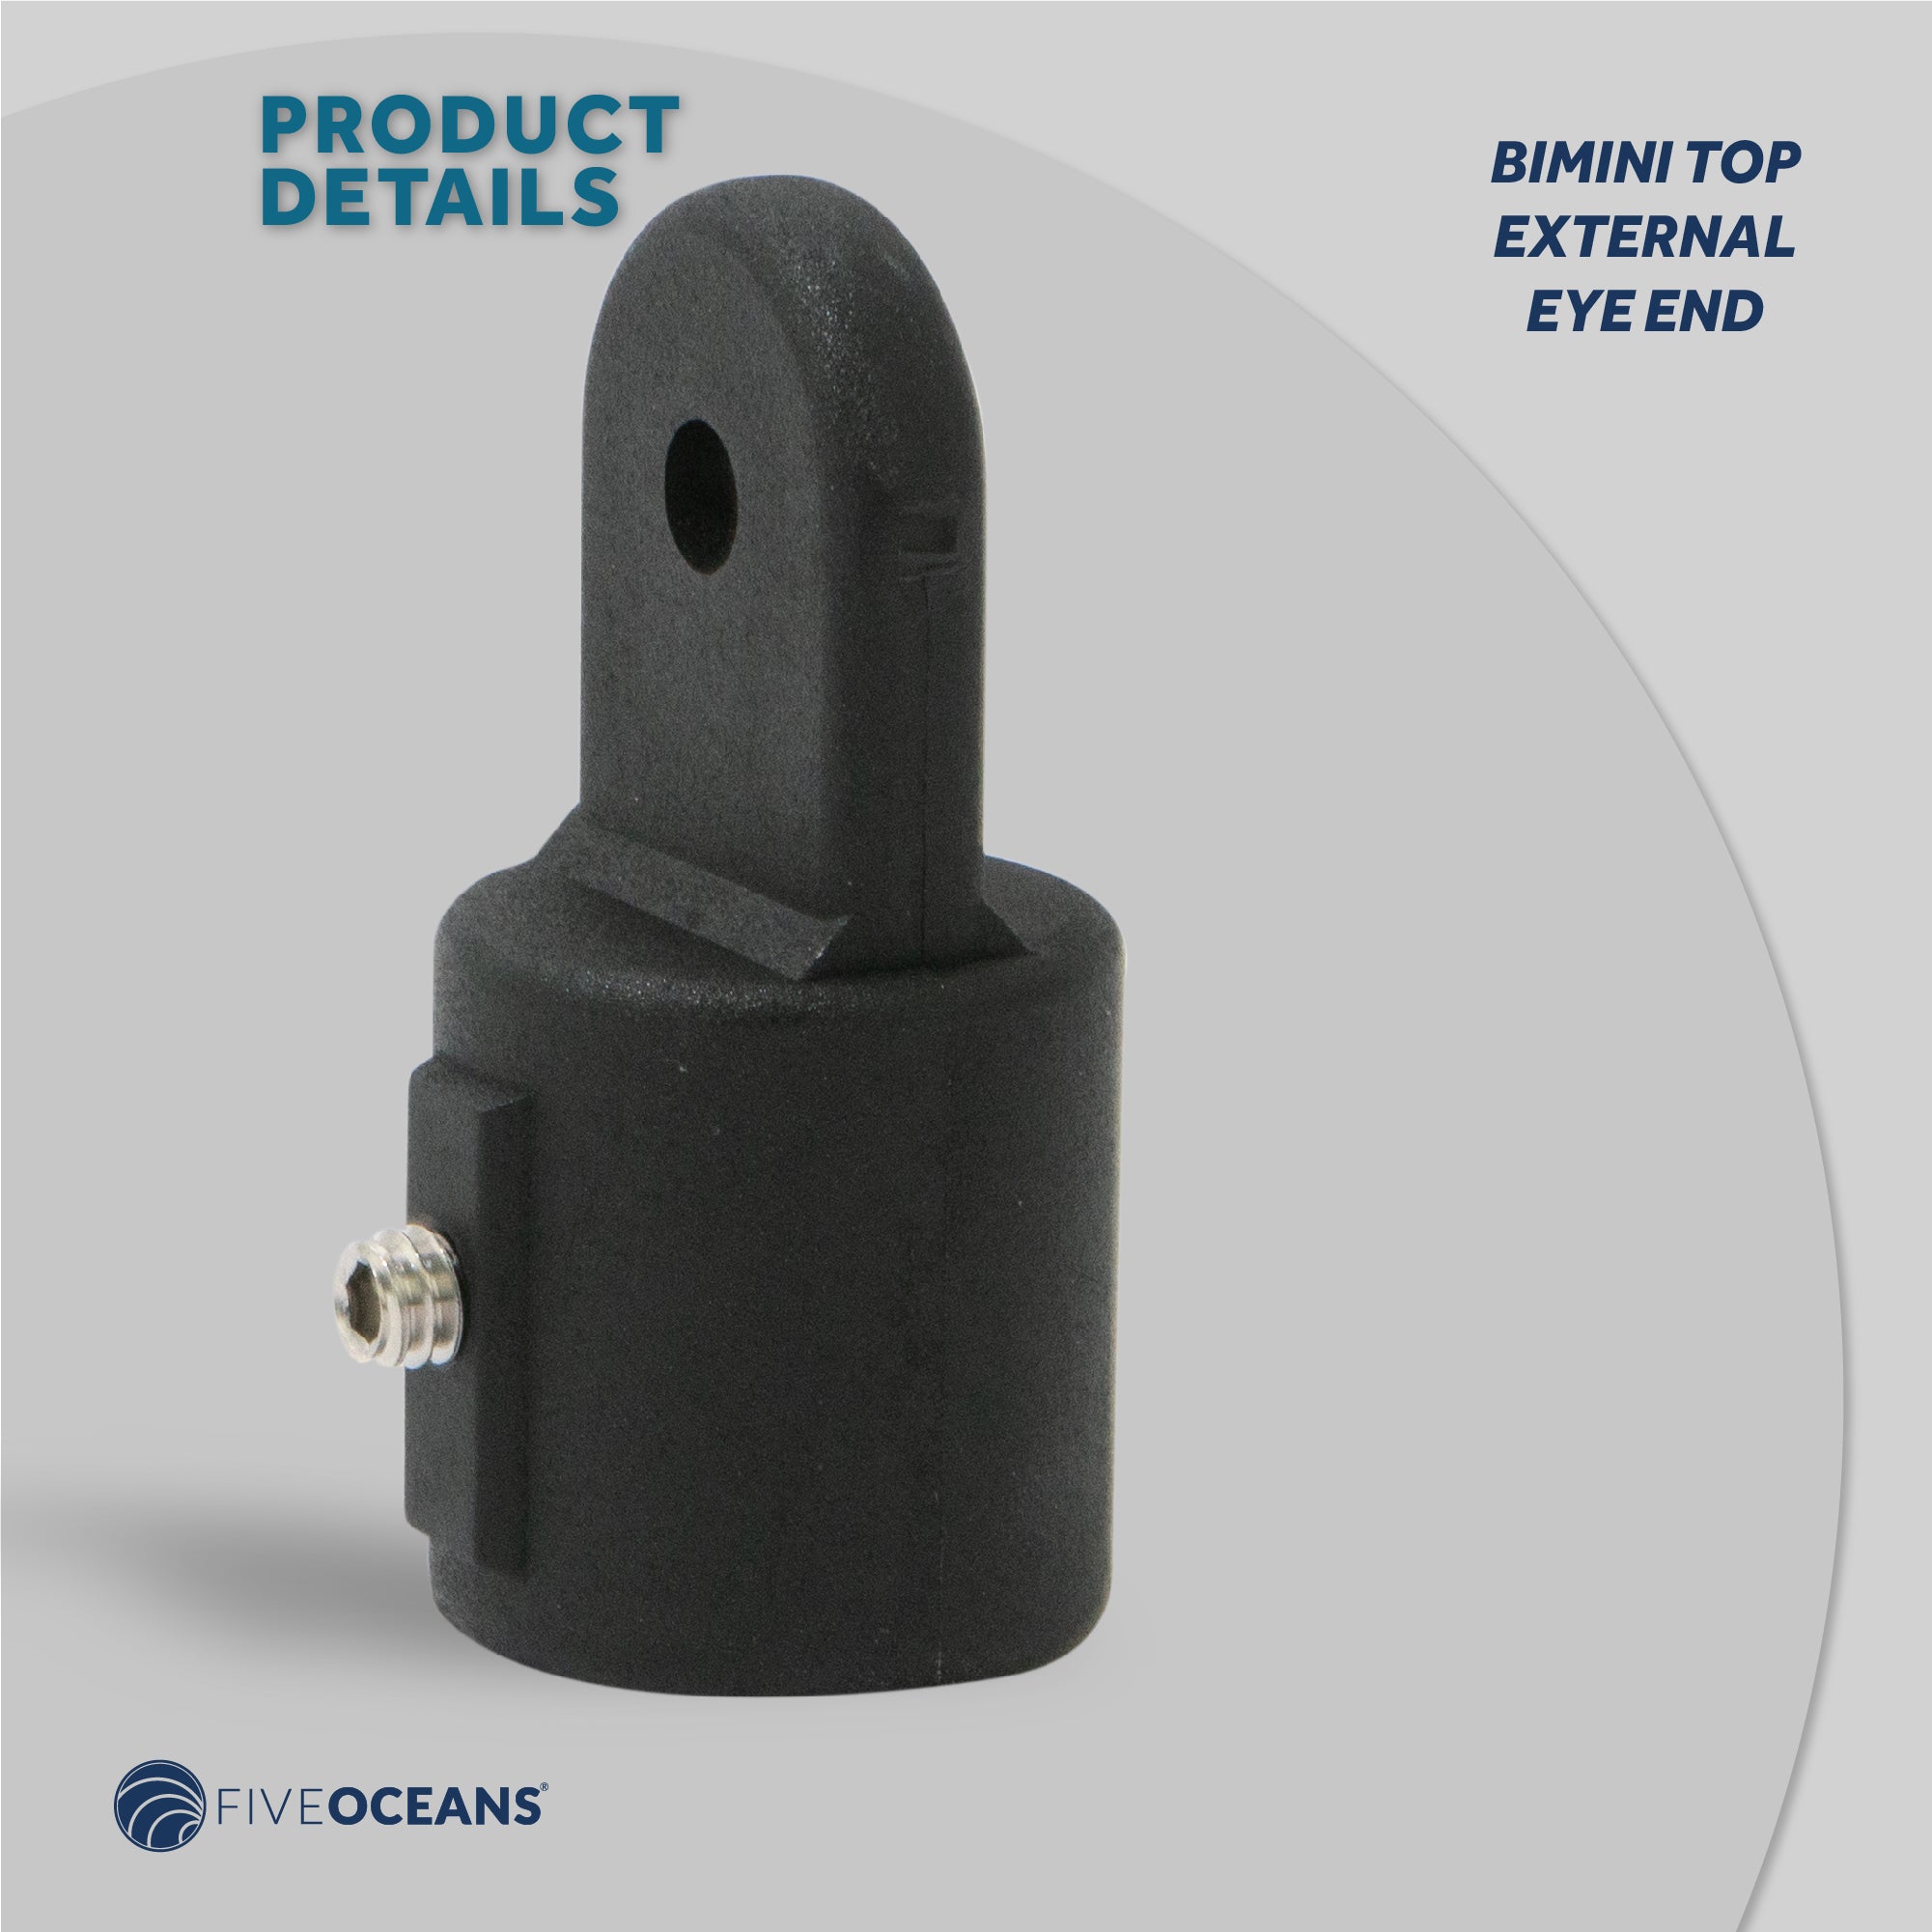 Bimini Top External Eye End, 7/8" Black Nylon, 4-Pack - FO3845-M4